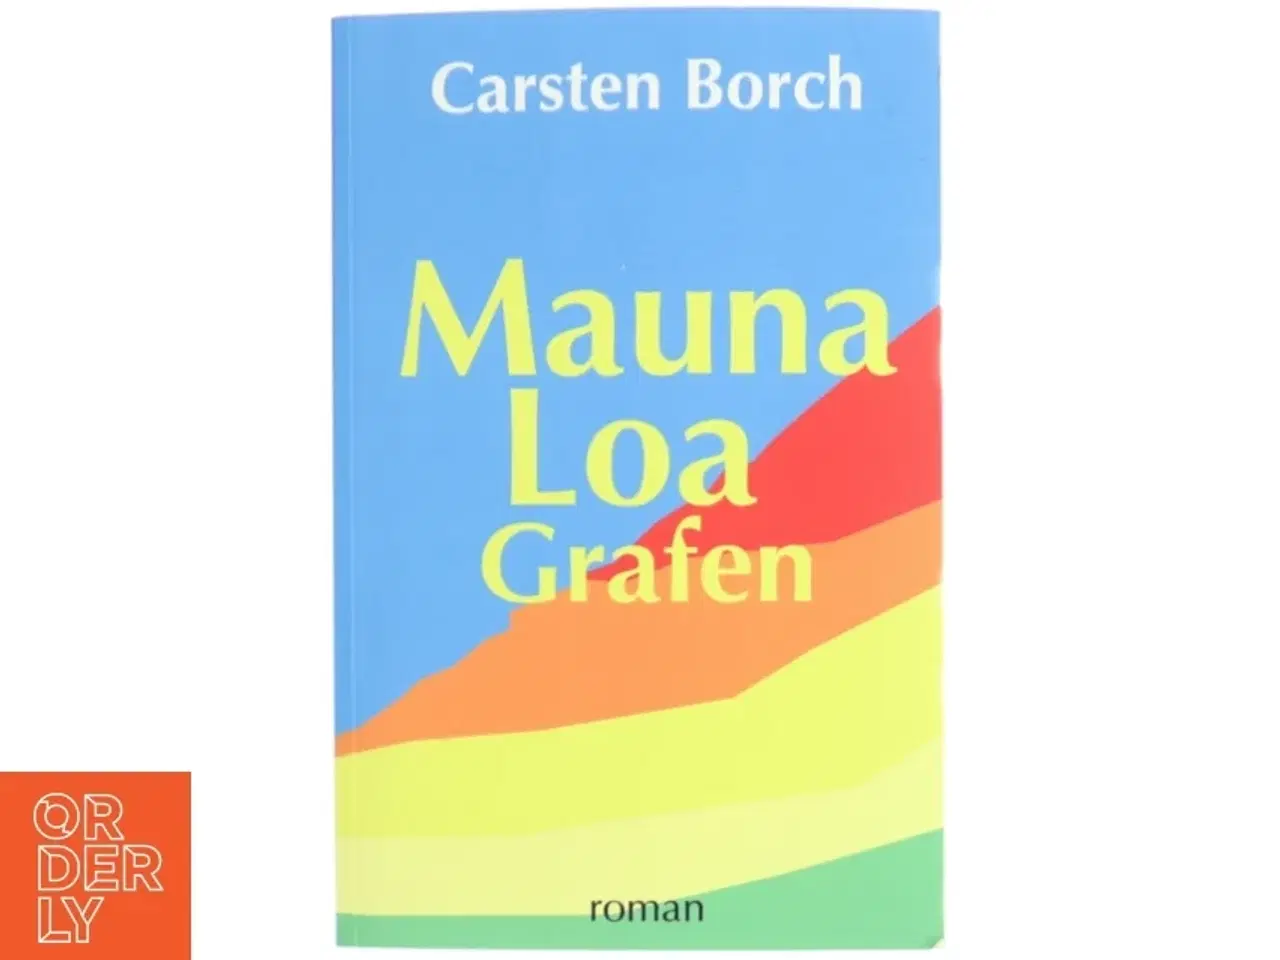 Billede 1 - 'Mauna Loa Grafen' af Carsten Borch (bog)